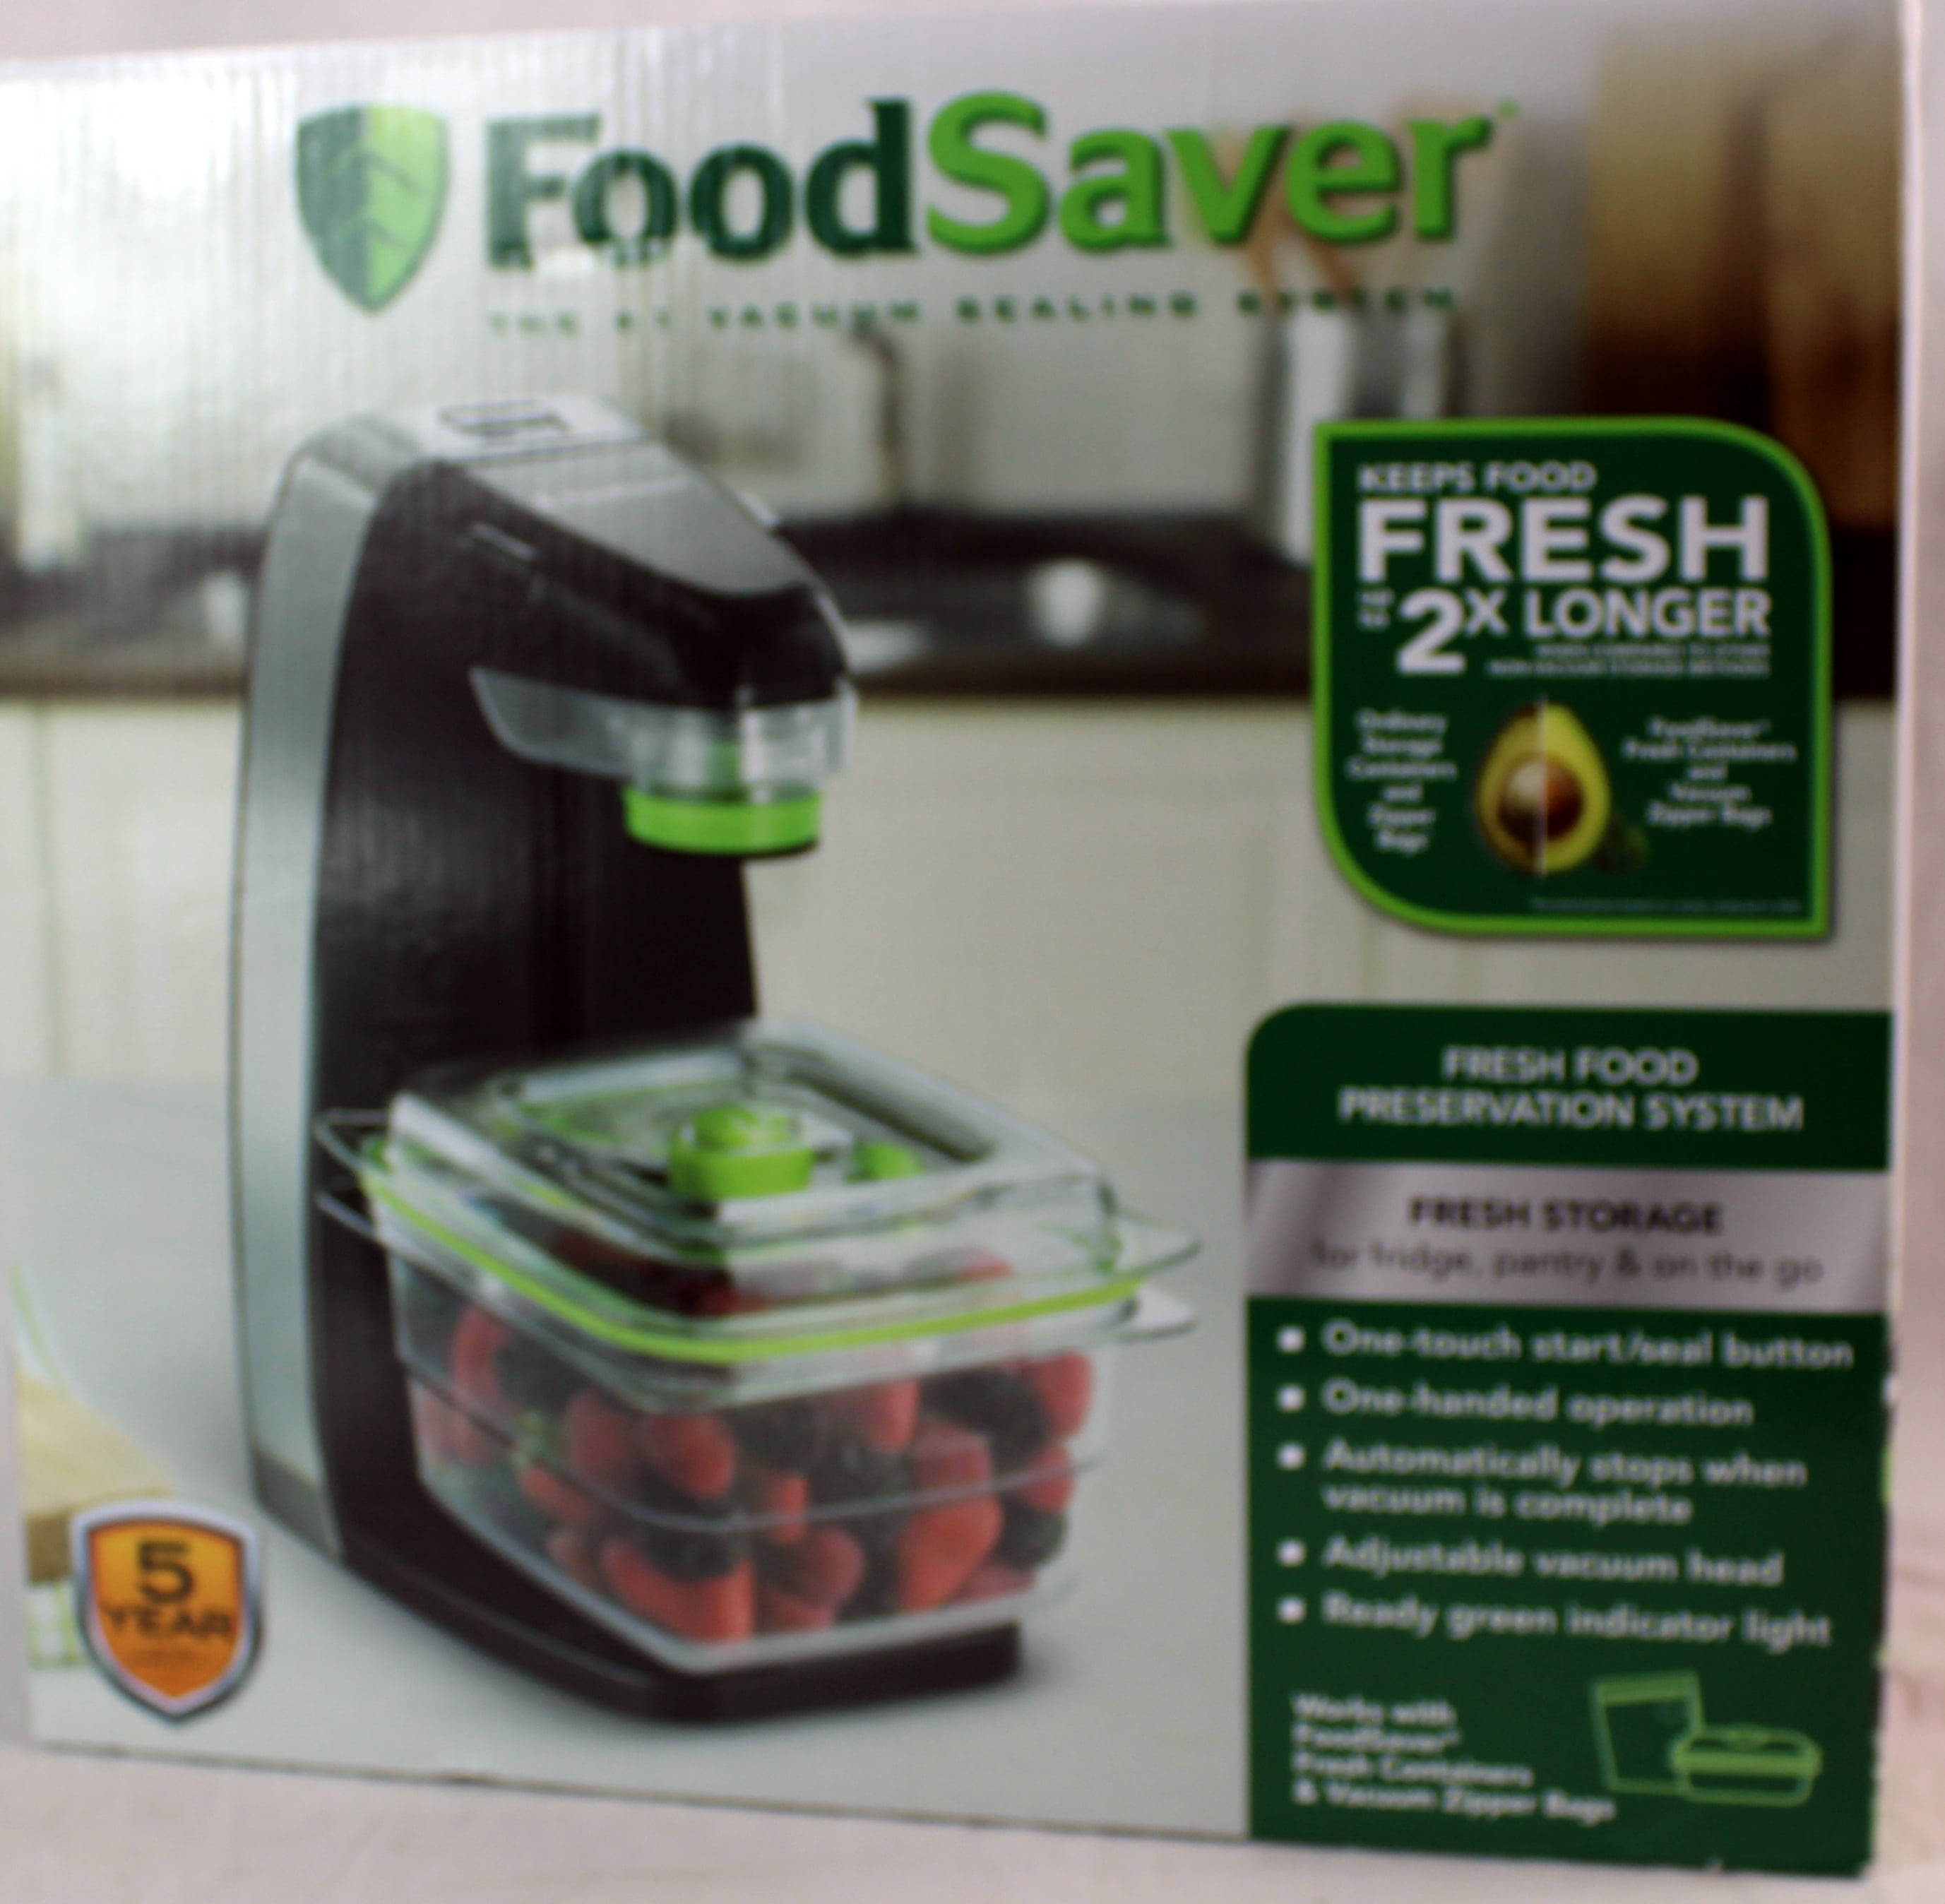 Freezer Space Saver Organization Food storage – Speedy Commerce Ventures